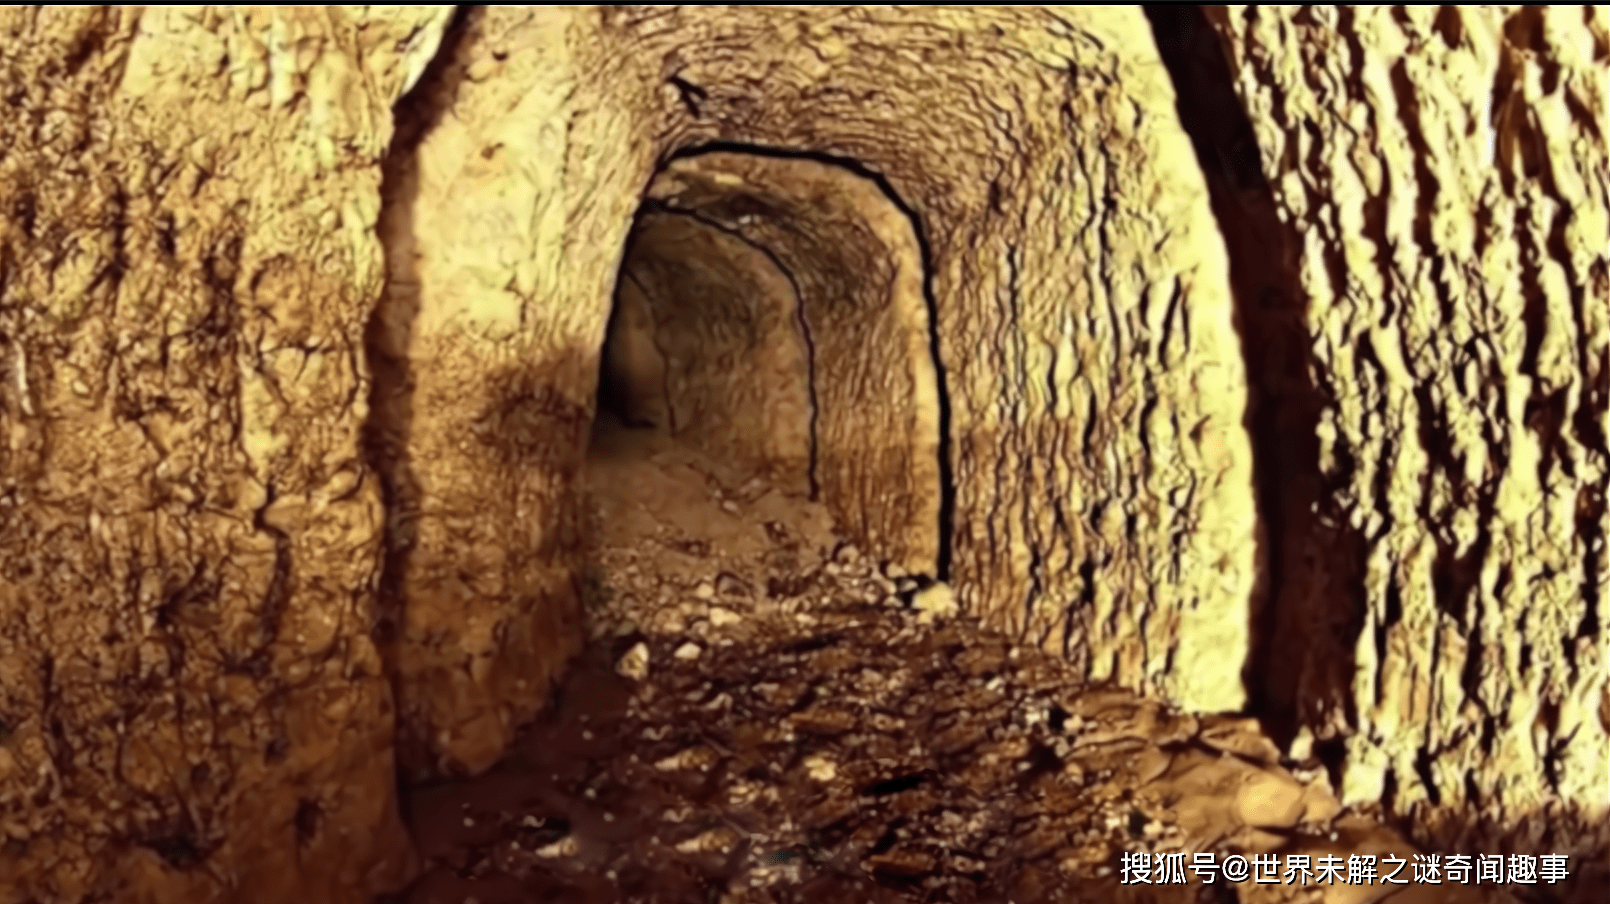 原创厄瓜多尔黄金洞,轰动考古界!它到底有哪些不可思议的地方?